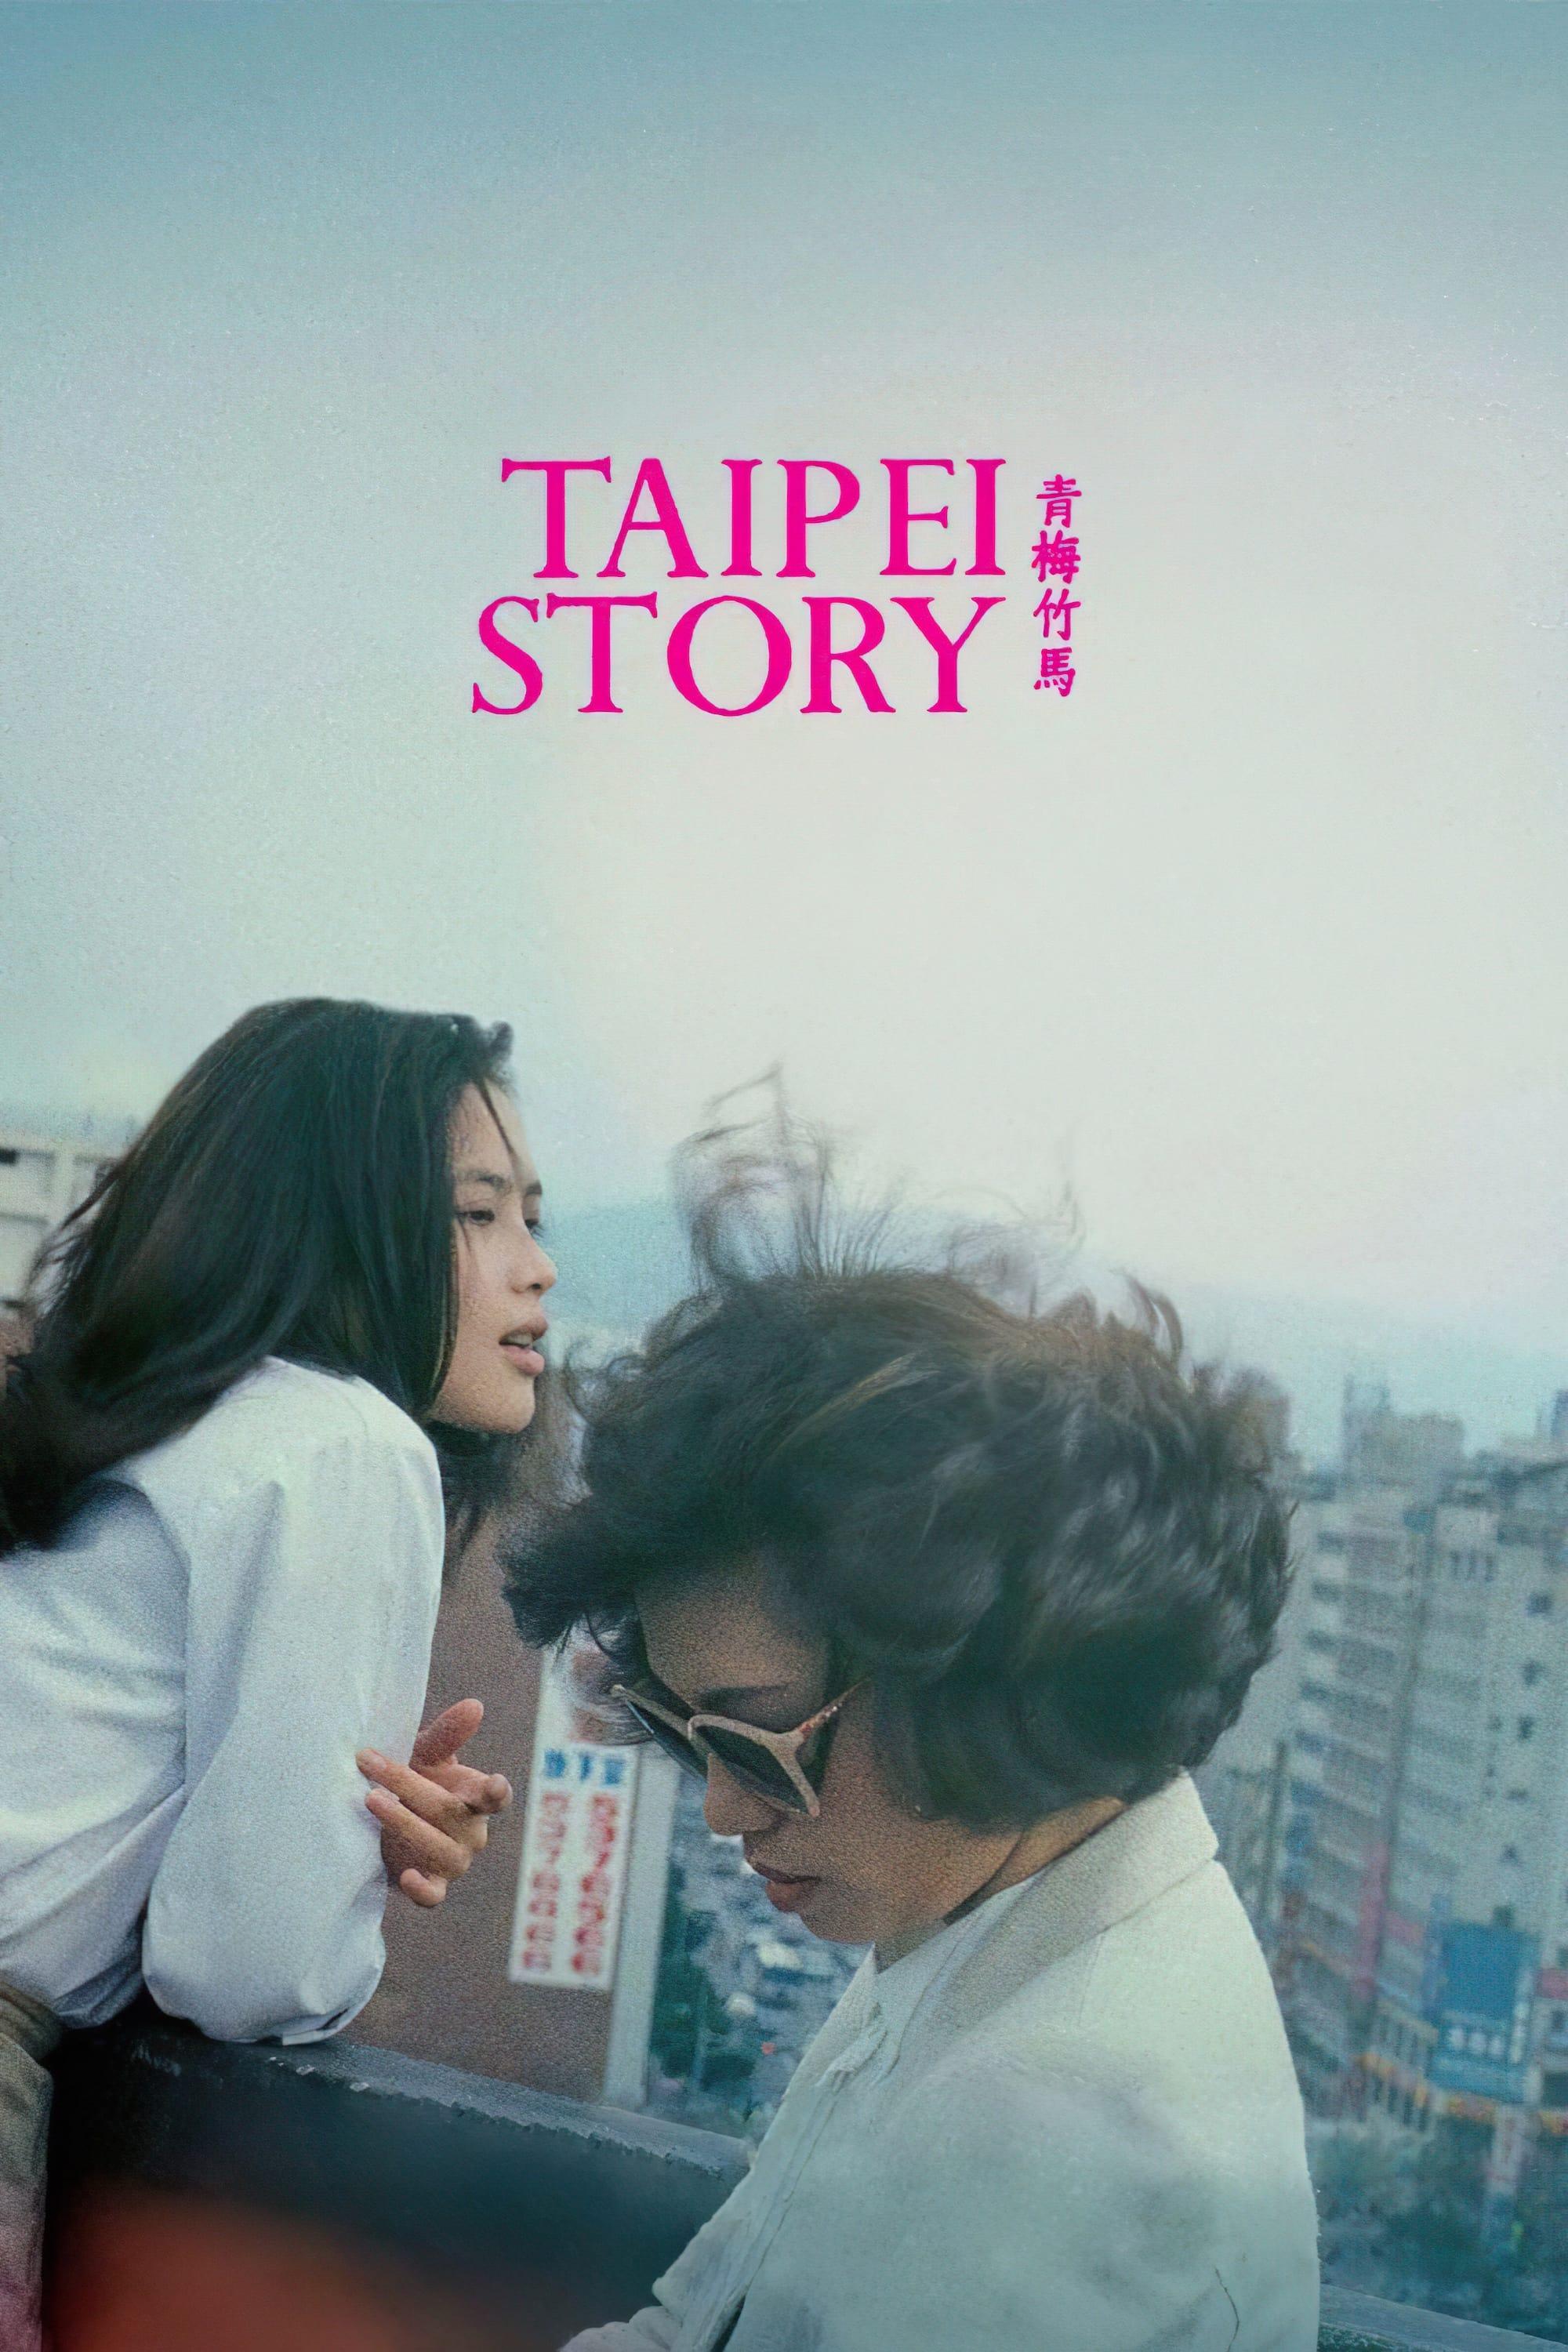 Taipei Story poster